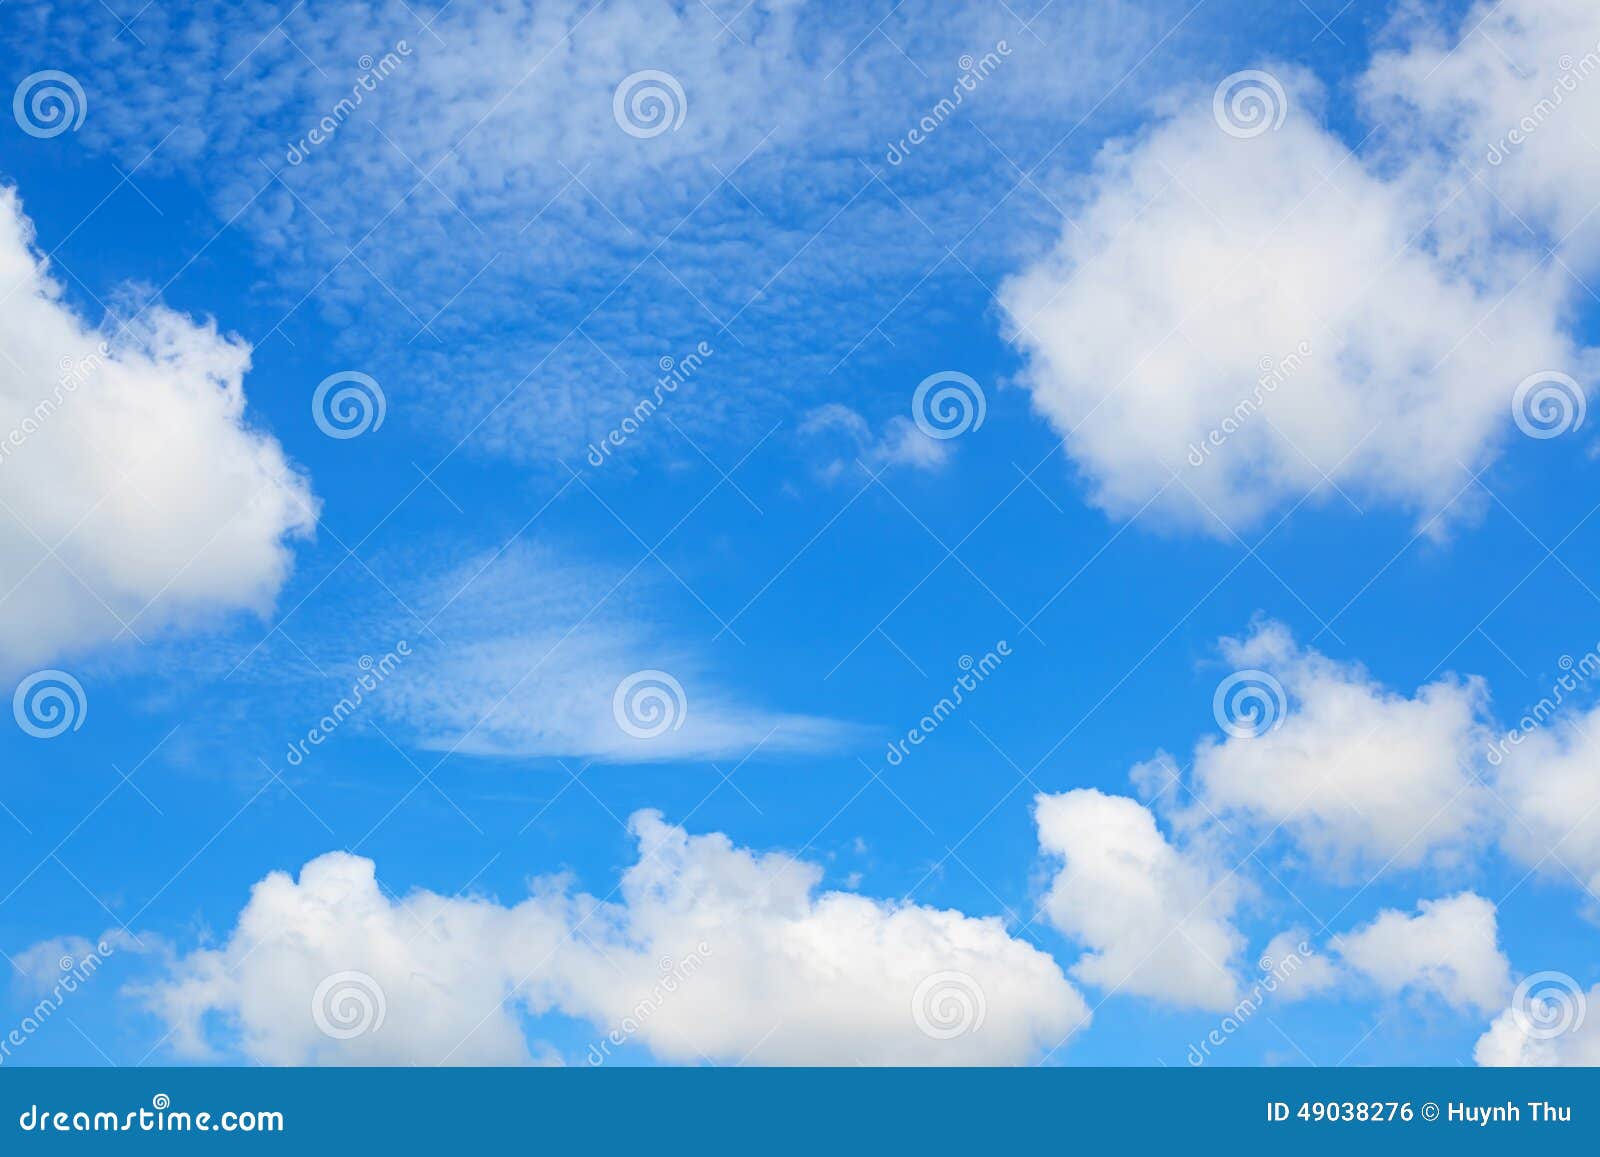 Ánh sáng chiếu xuống từ đám mây mềm mại tạo nên không gian huyền ảo, tuyệt đẹp. Xem những hình ảnh liên quan đến đám mây để cảm nhận được sự độc đáo và kỳ lạ của tạo hóa.